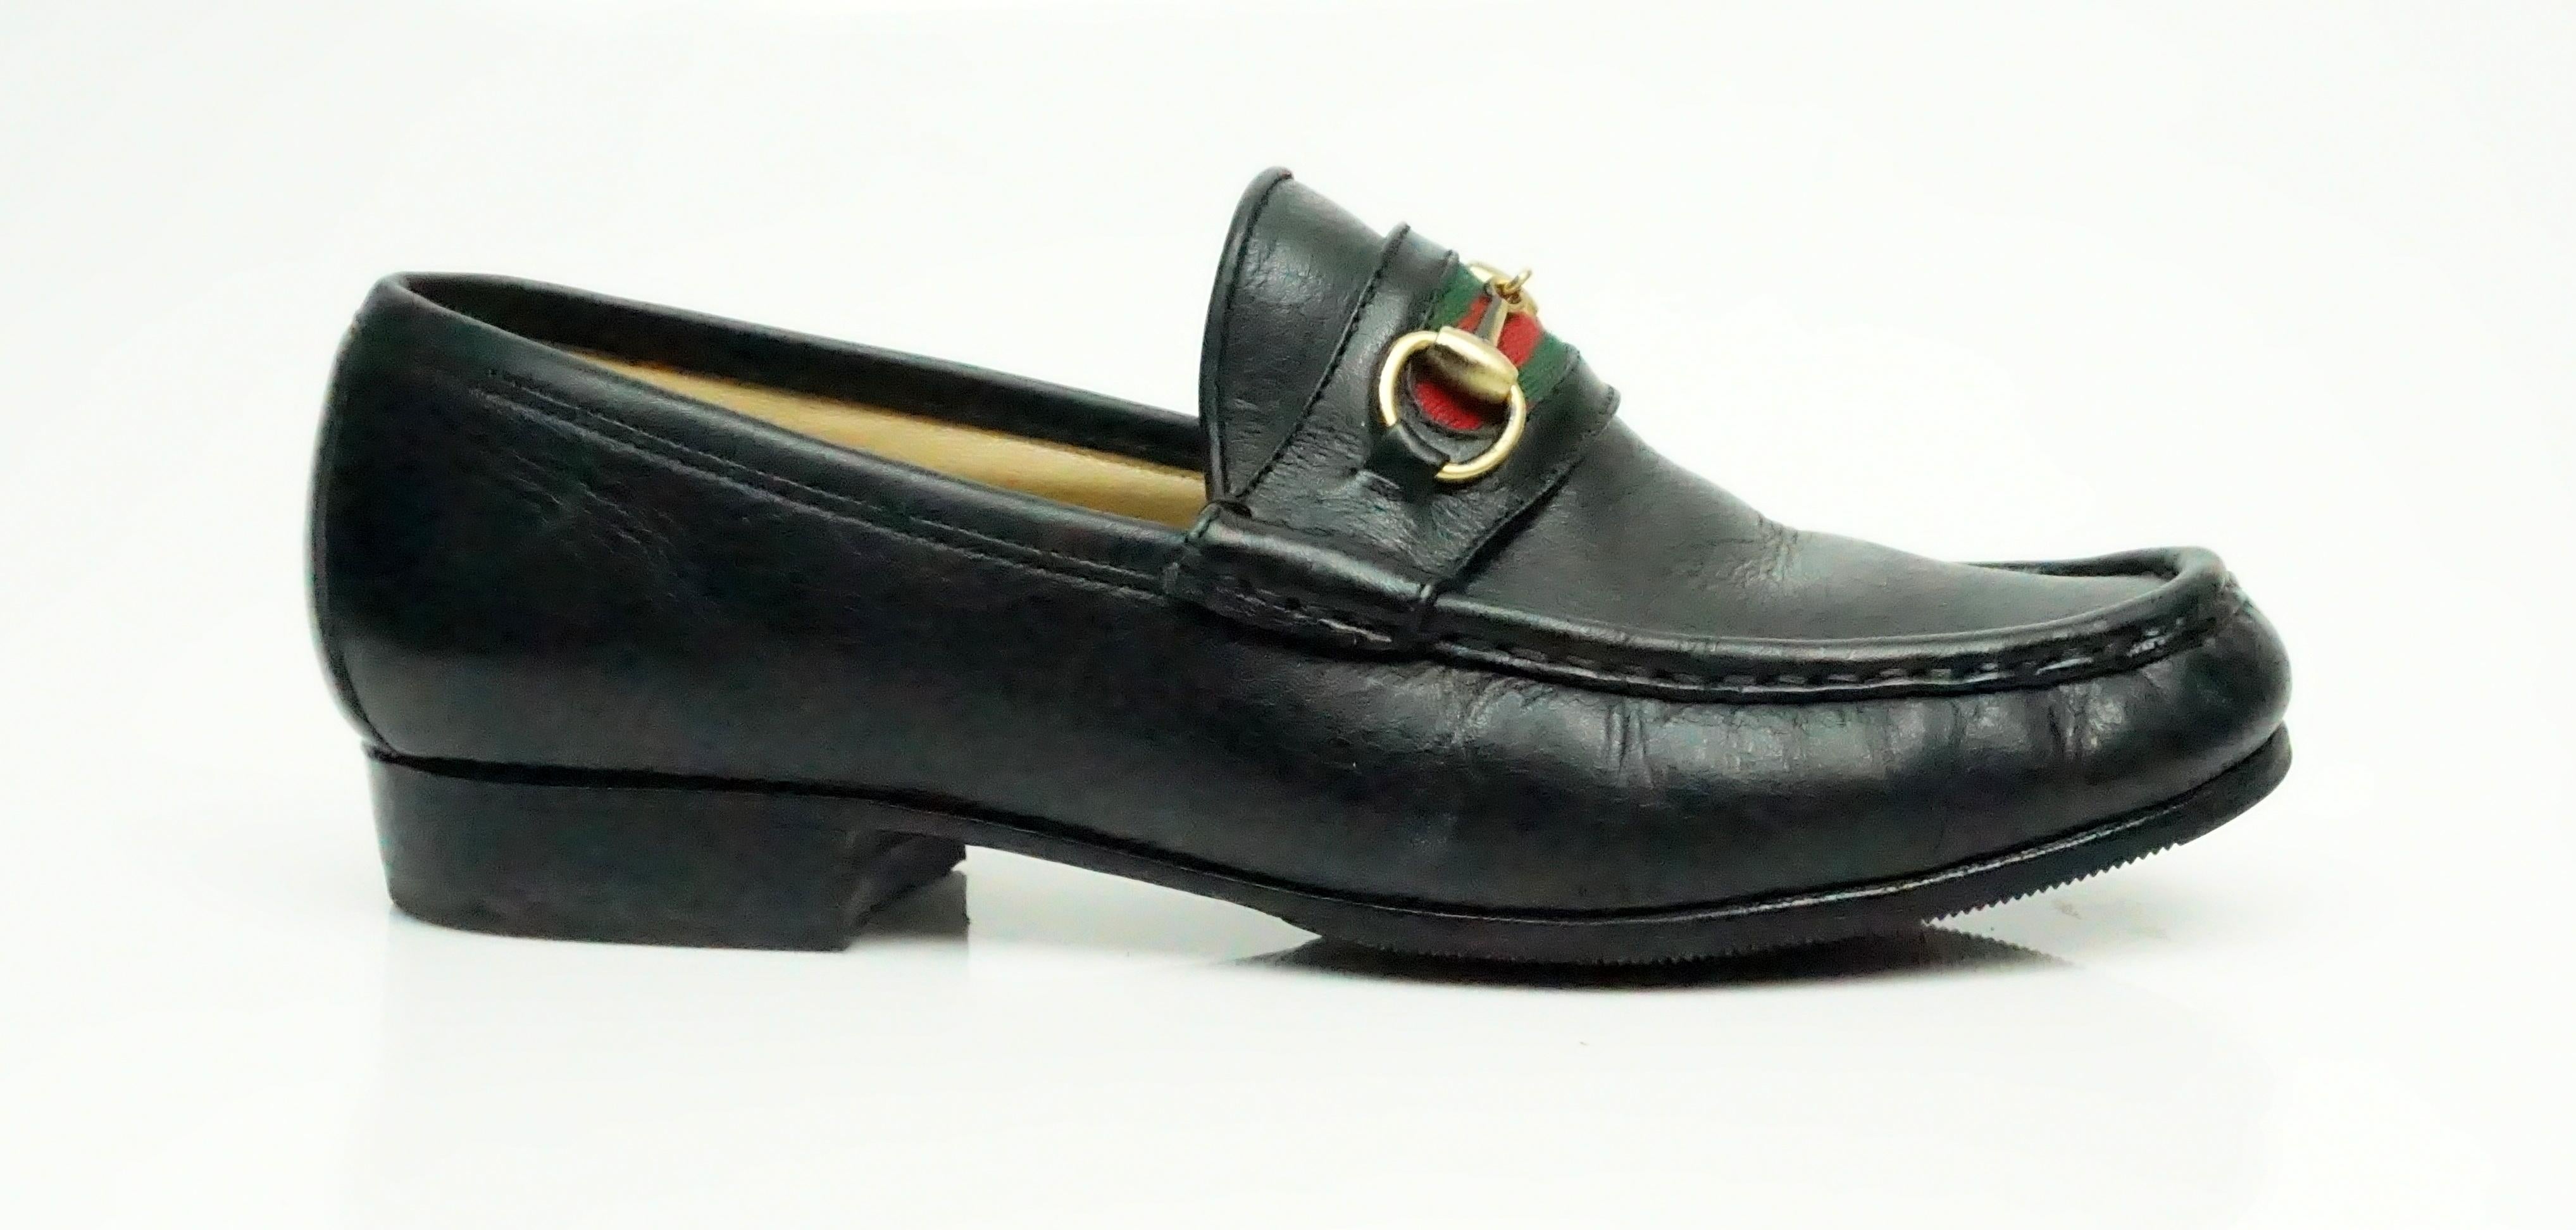 Gucci VIntage Schwarzes Leder Loafer w / Rot und Grün Stripe - 6 Diese Vintage Gucci Leder Loafer ist in sehr gutem Zustand. Der Schuh hat sehr wenig Verschleiß. Der Schuh hat den klassischen roten und grünen Gucci-Streifen auf der Vorderseite mit